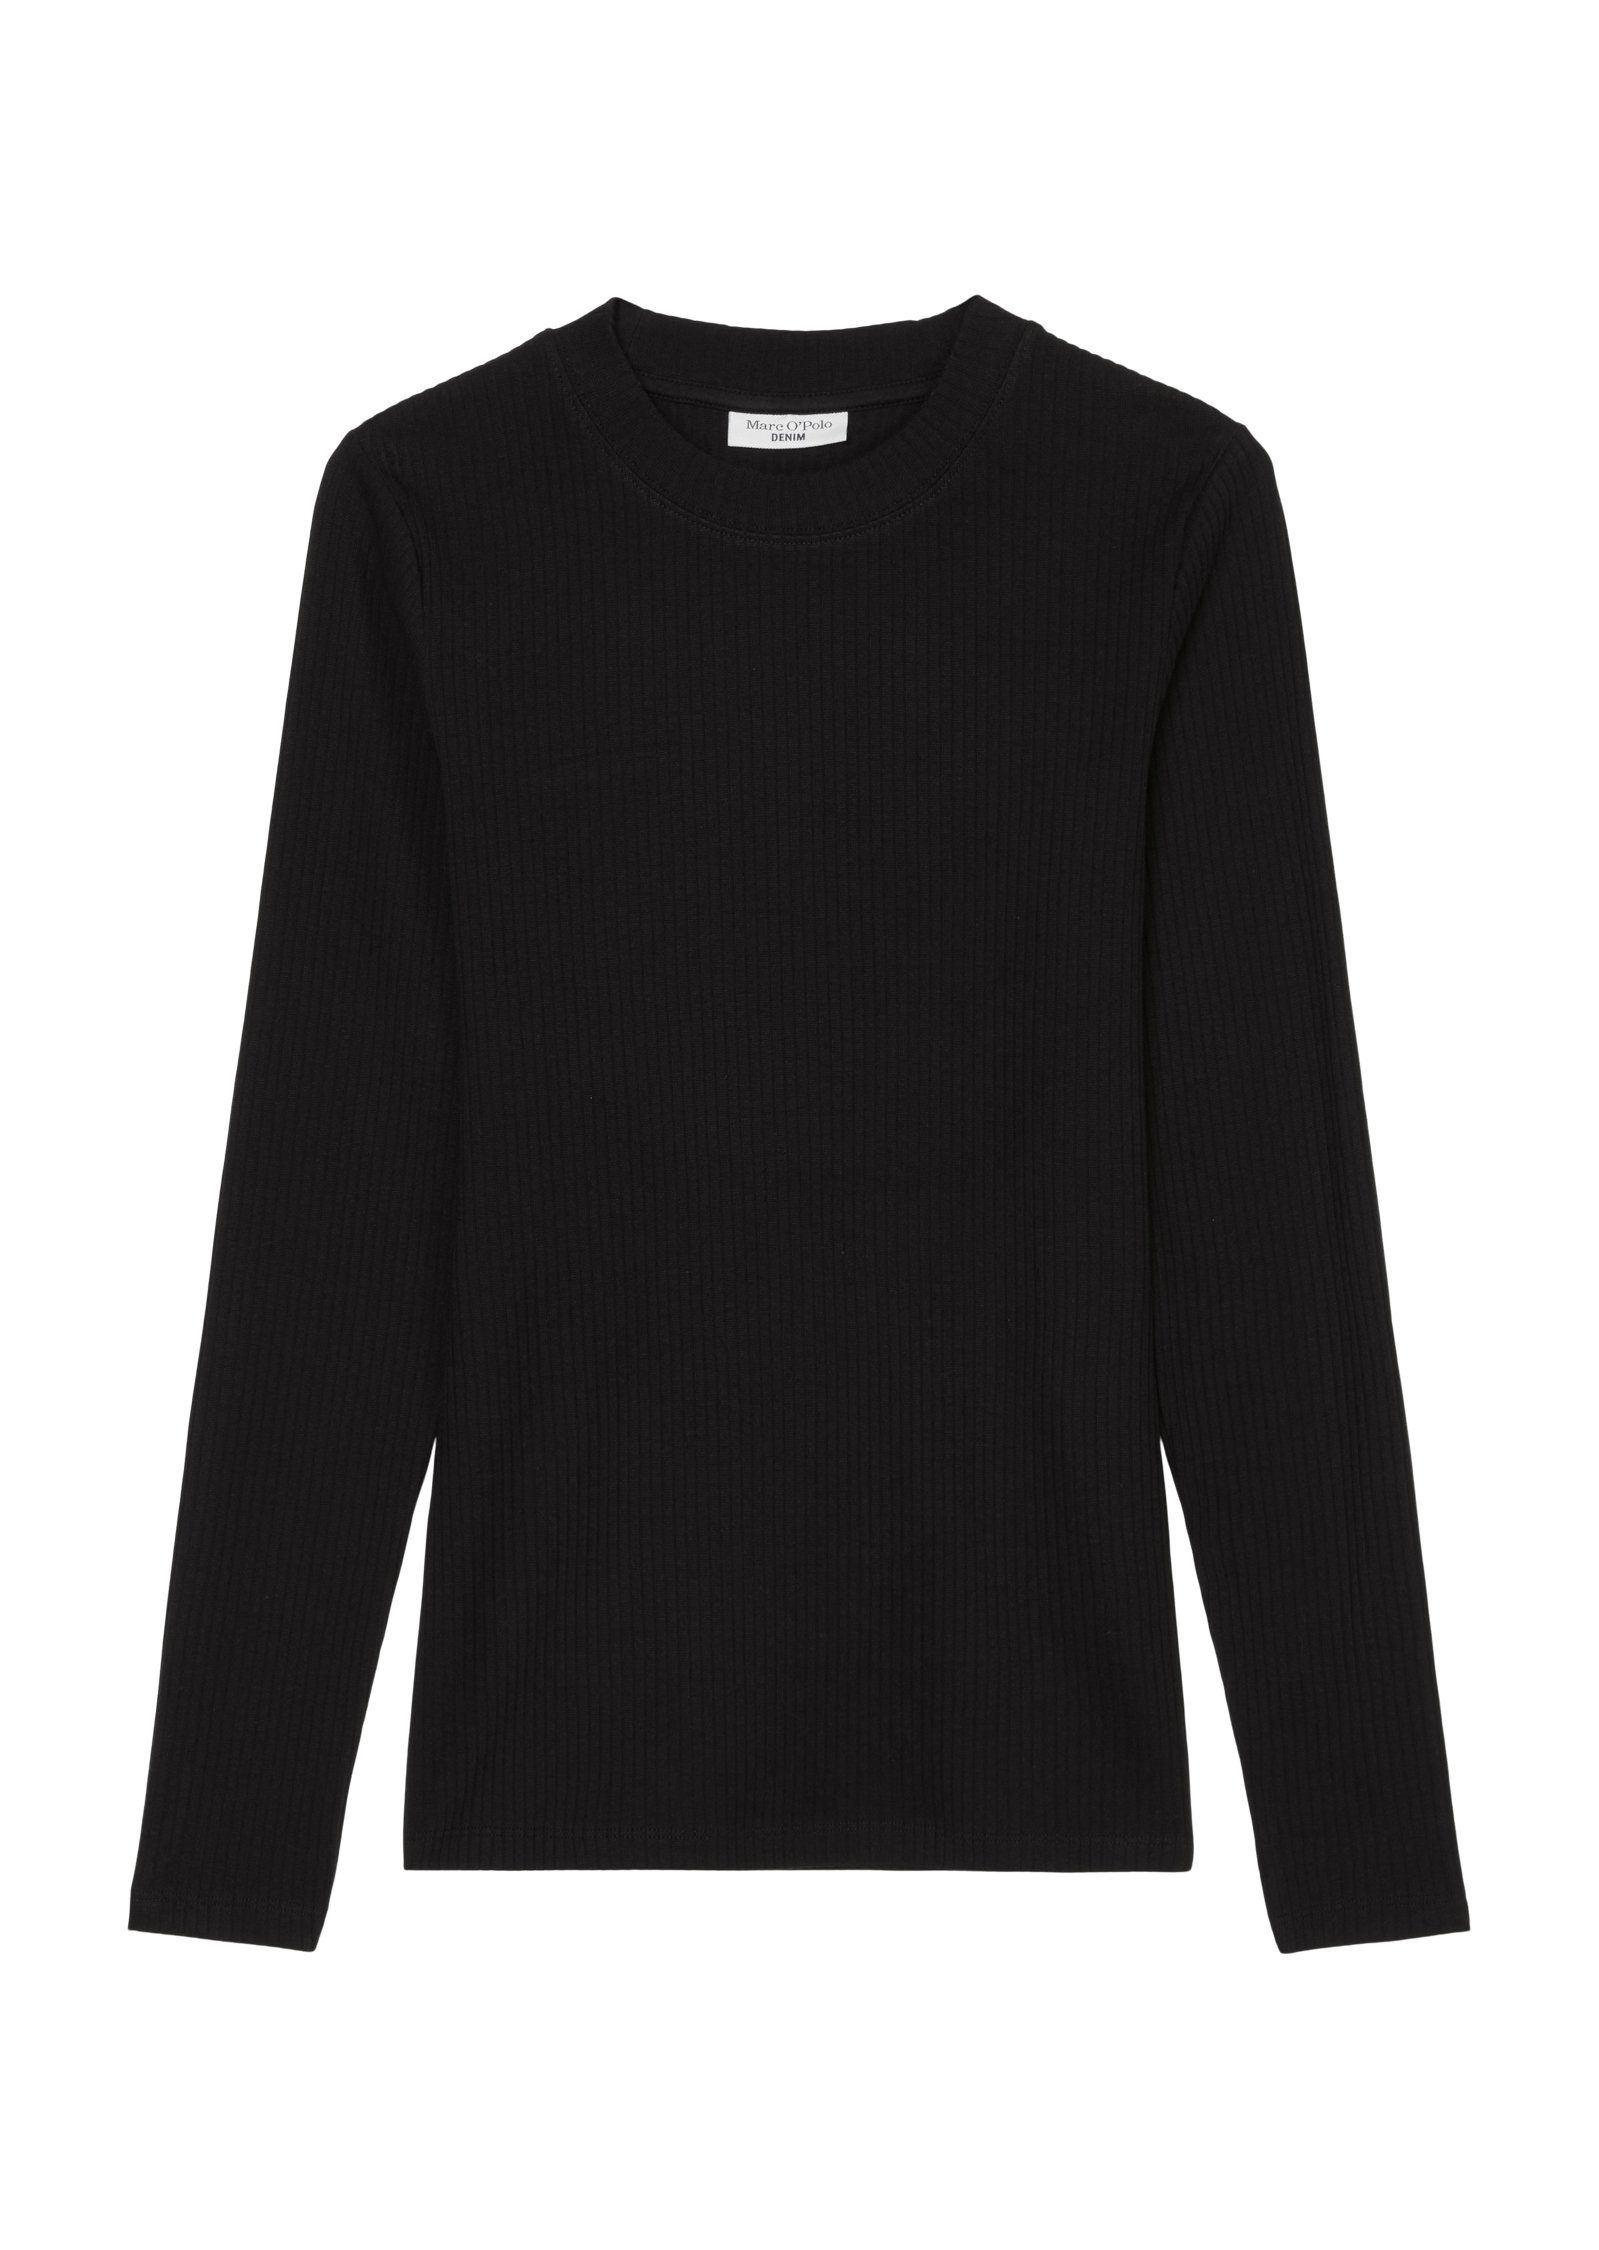 Marc O'Polo DENIM Langarmshirt in elastischer Qualität black | Rundhalsshirts